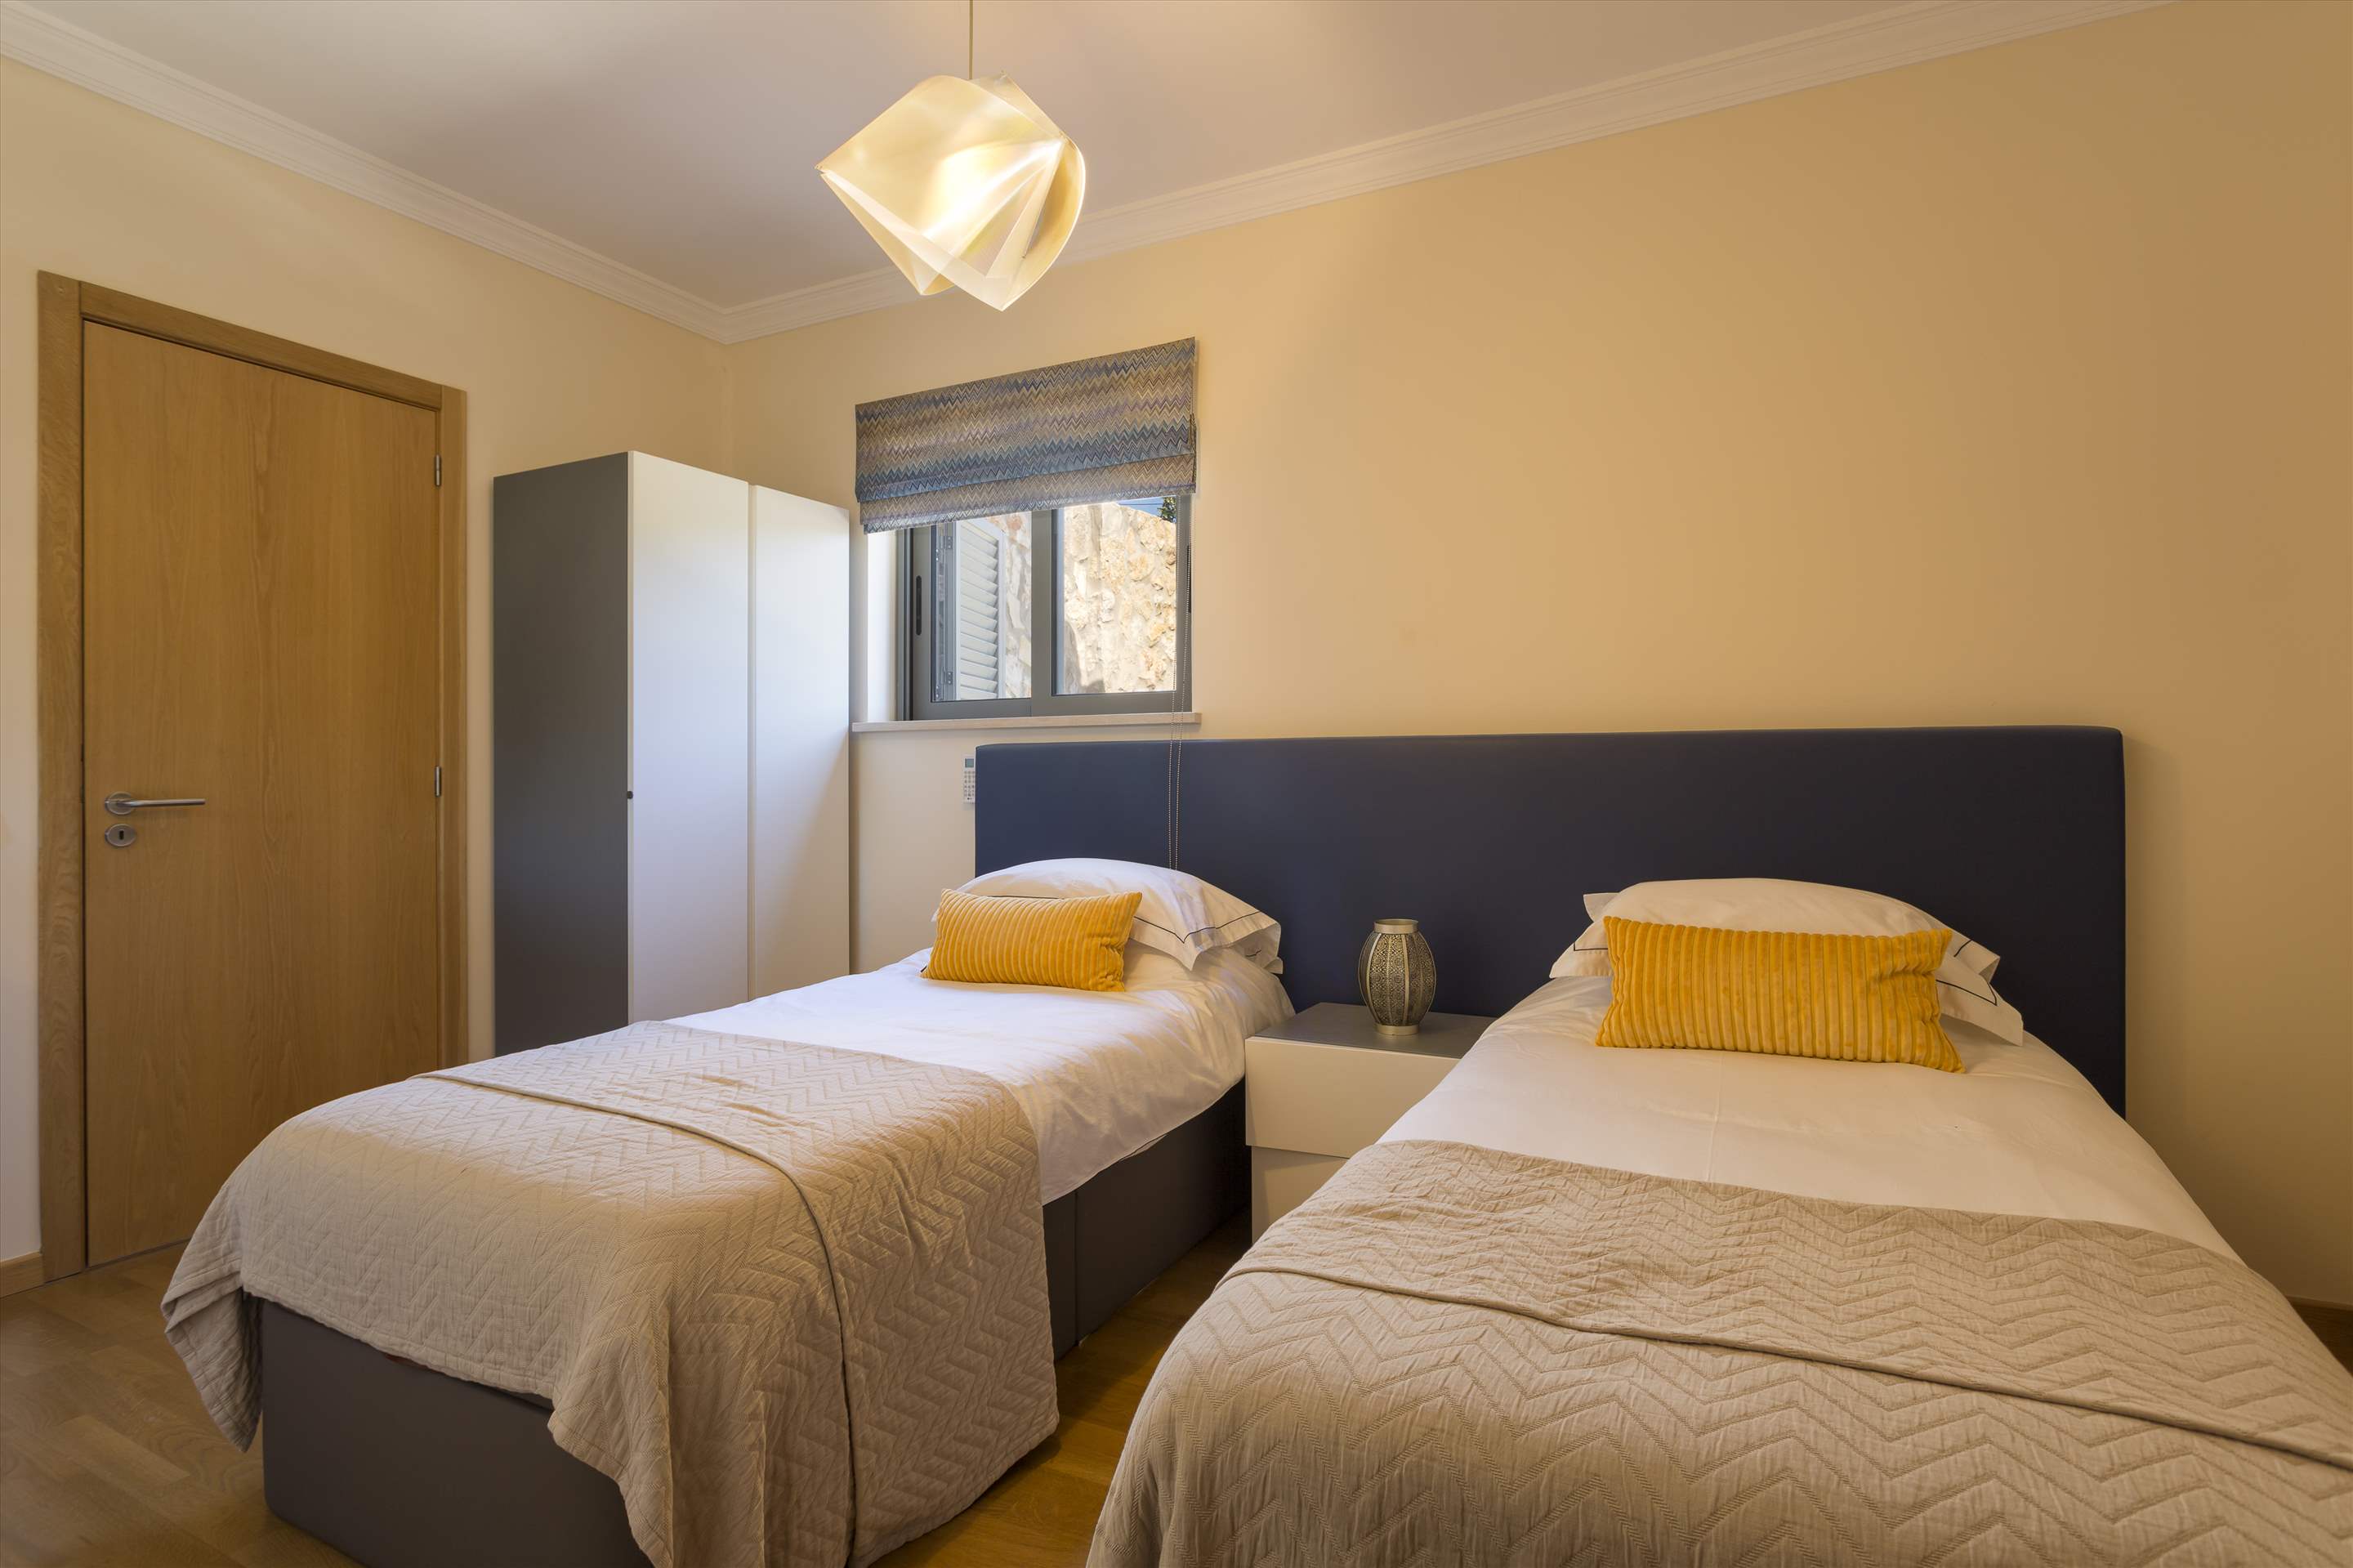 Casa da Pena Branca, Three bedroom, 6 Persons Occupancy, 3 bedroom villa in Algarve Countryside, Algarve Photo #22